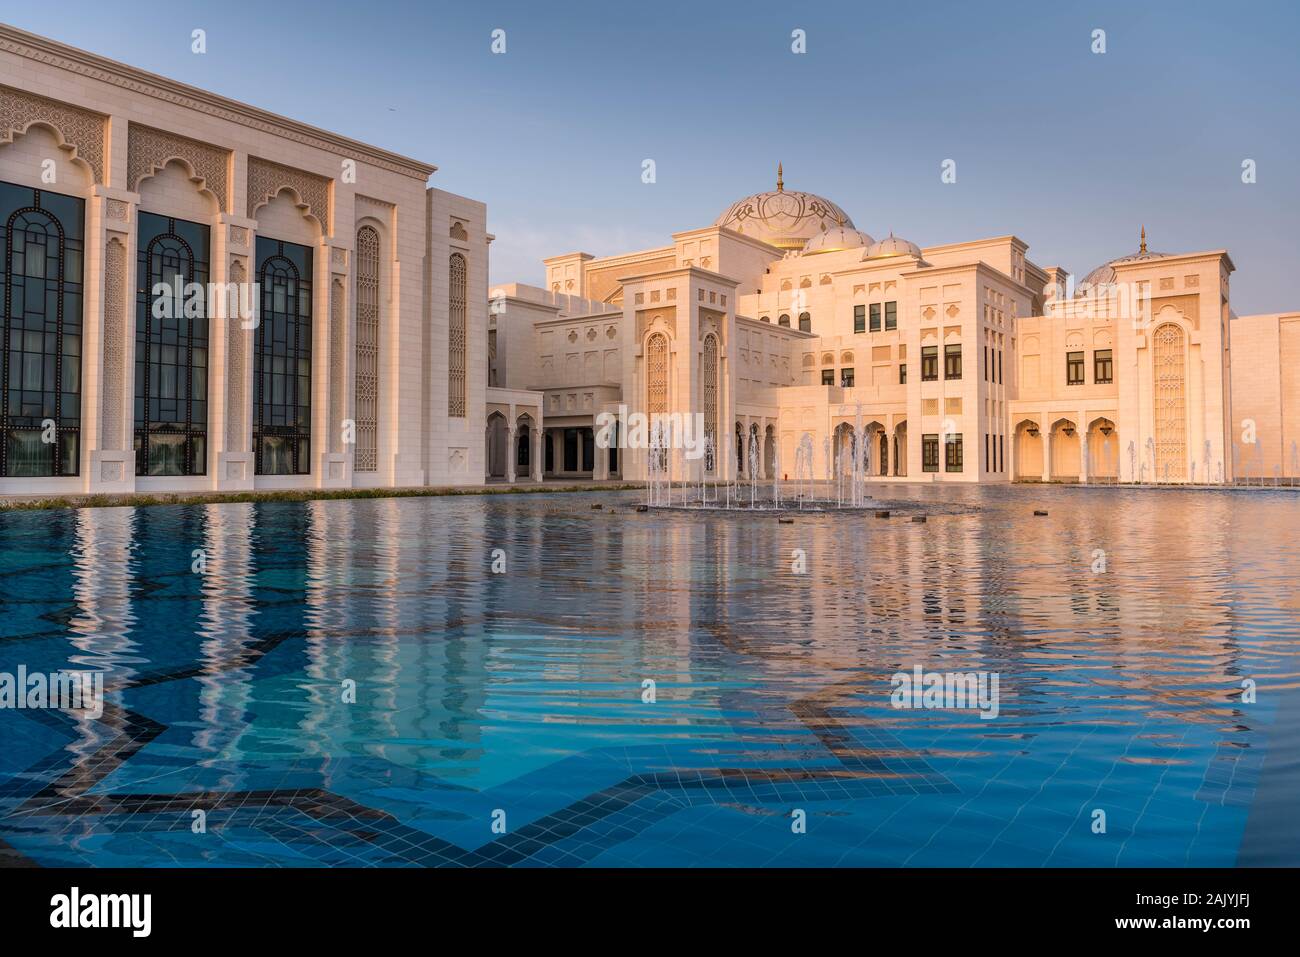 Abu Dhabi: Qasr Al Watan (Palast der Nation), Presidential Palace in Abu Dhabi, Draußen, außen, bei Sonnenuntergang, Reflexion im Wasser, niemand Stockfoto